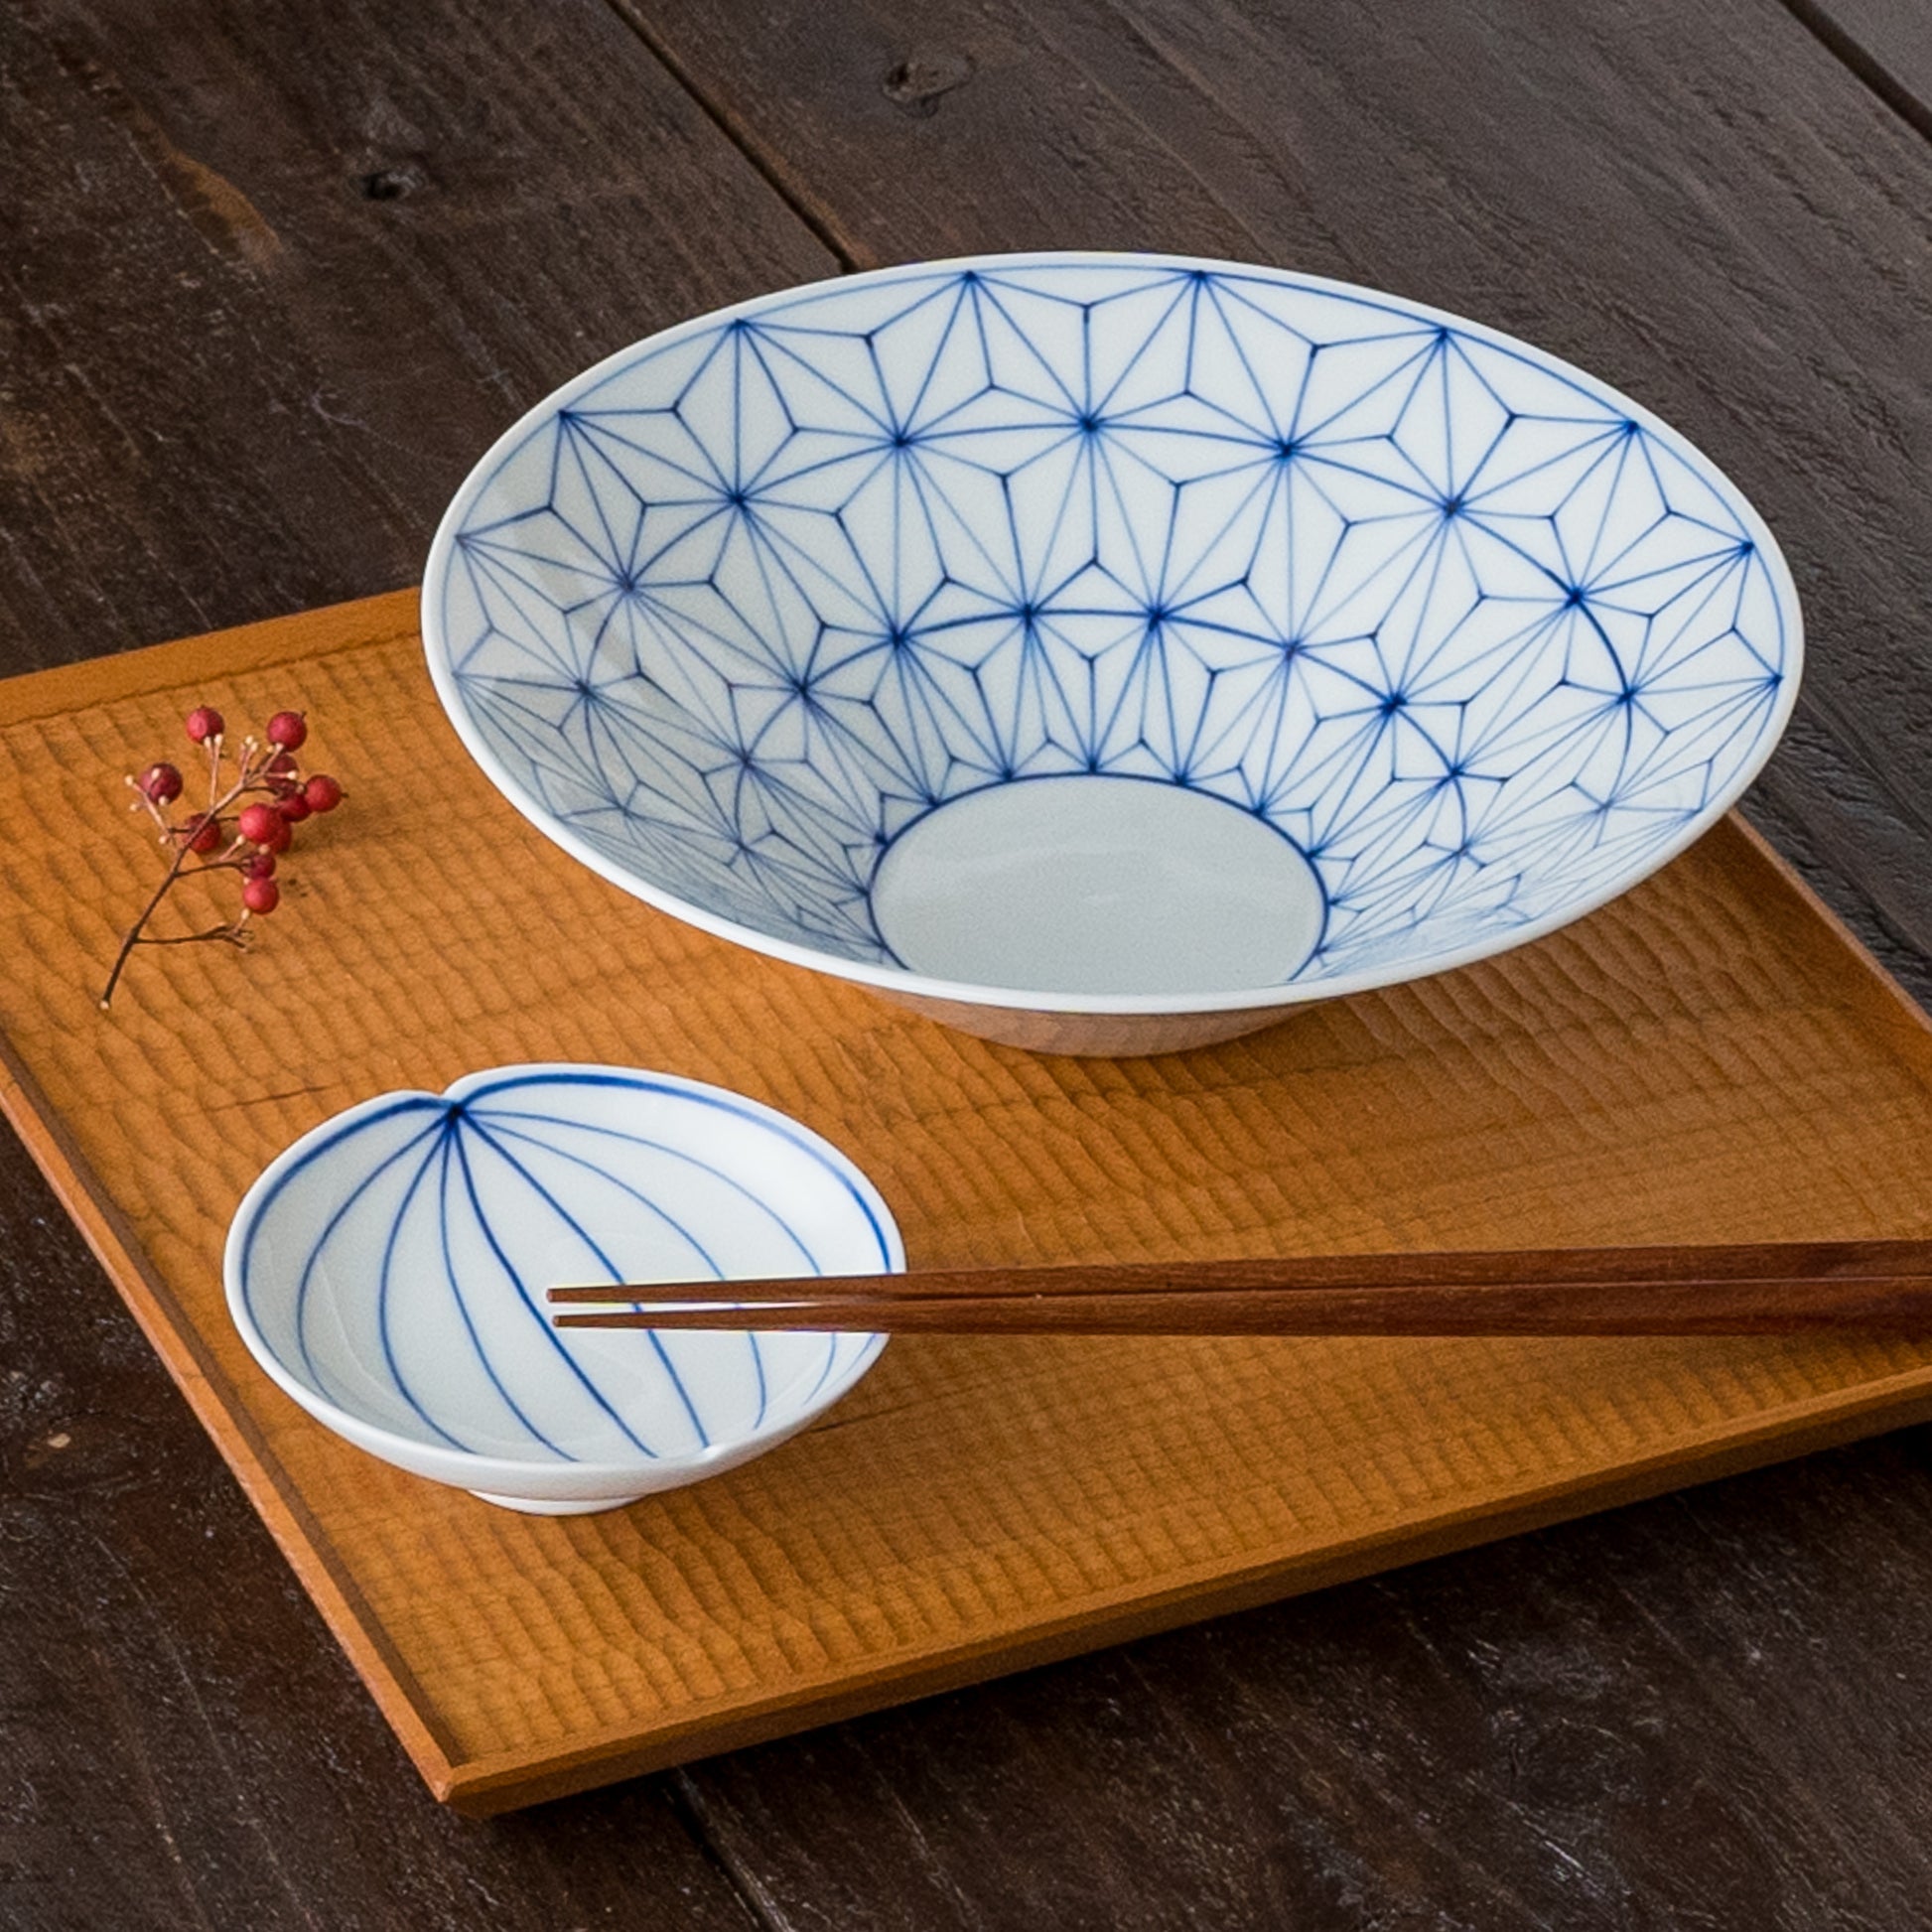 眞窯さんの麻の葉預け鉢円錐形とyoumyaku高台皿